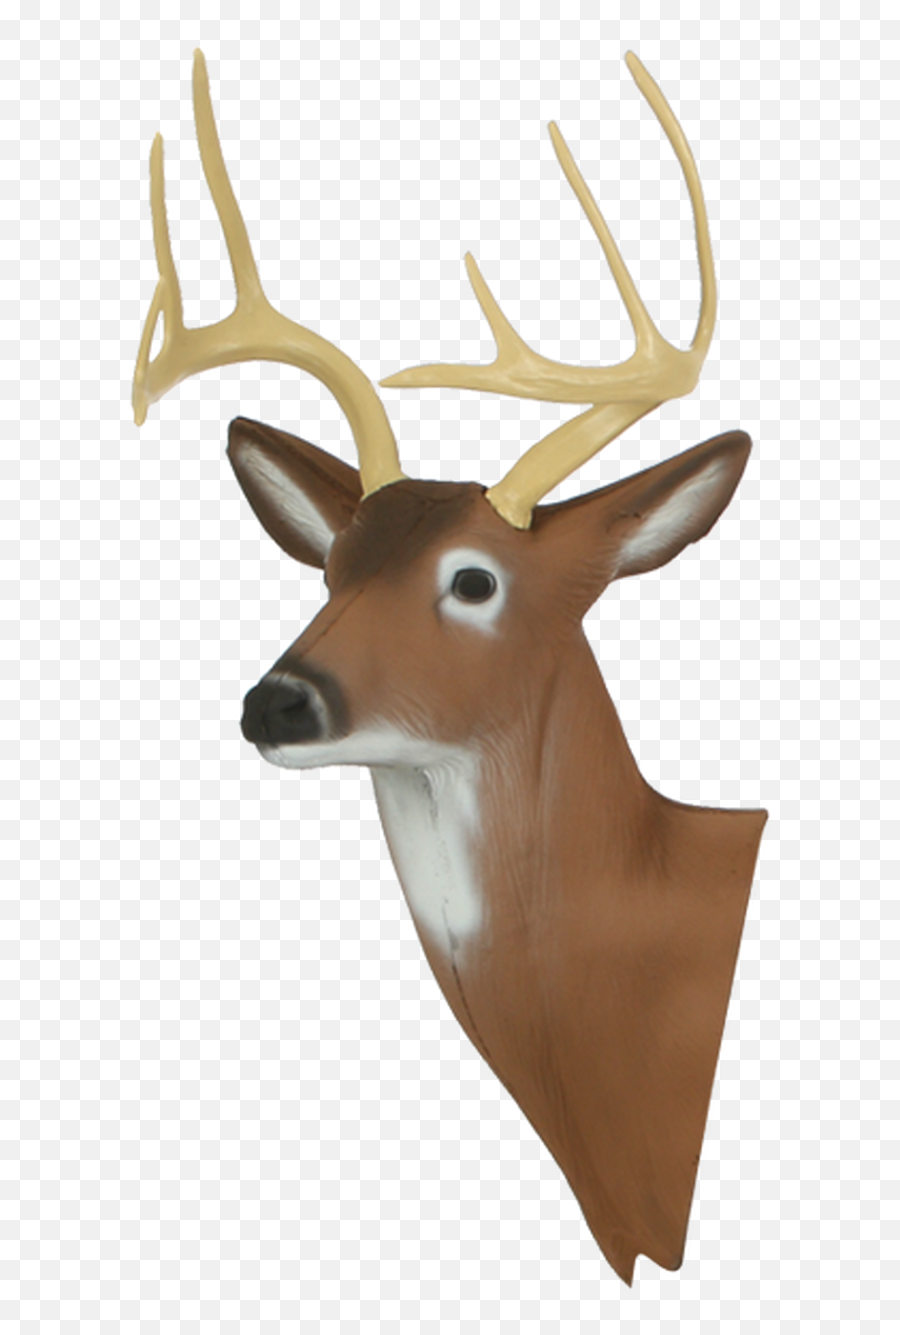 Download Hd Deer Head Png Emoji,Deer Head Png